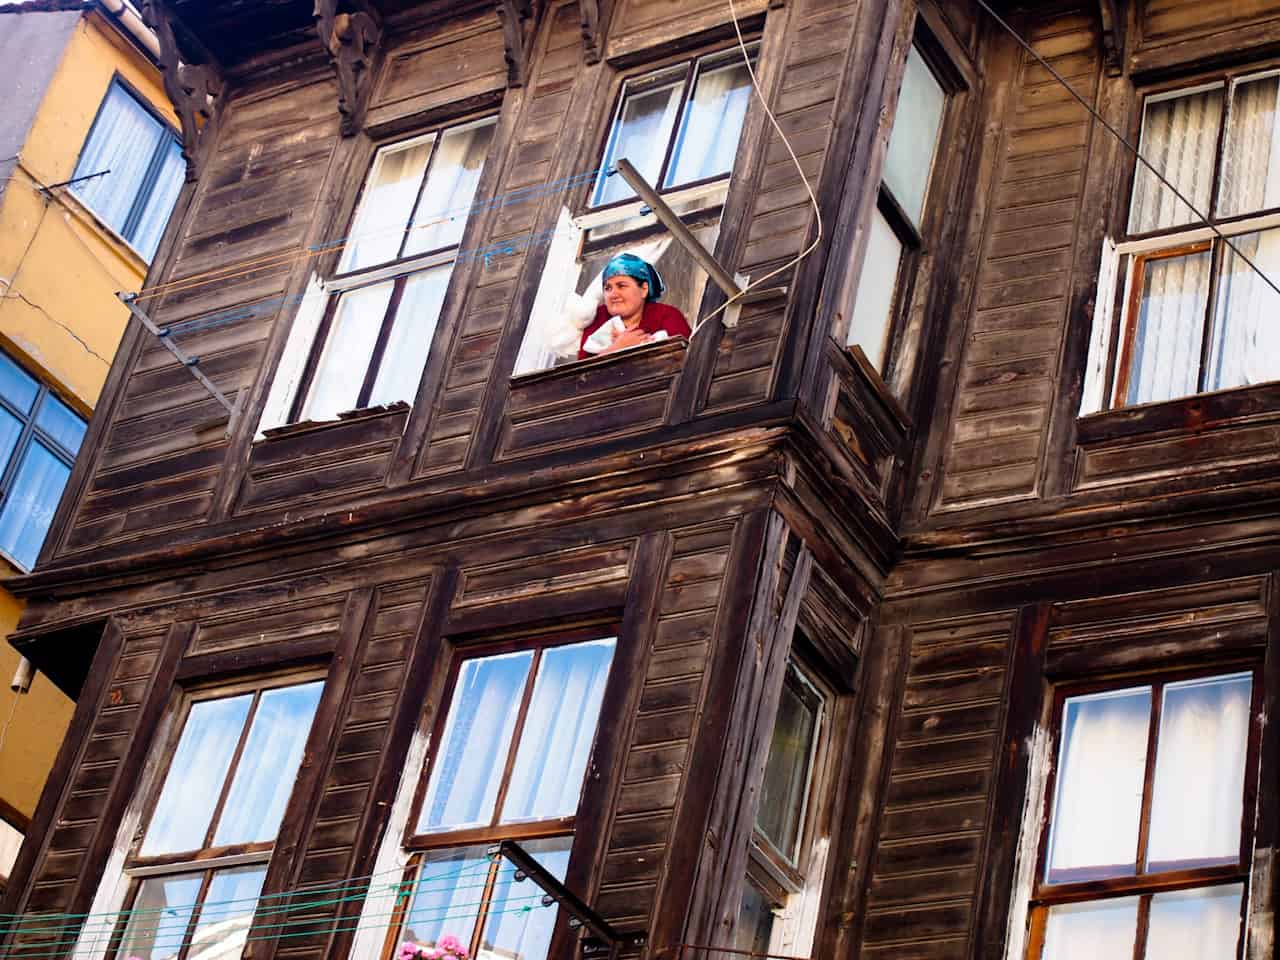 Woman in window, Istanbul